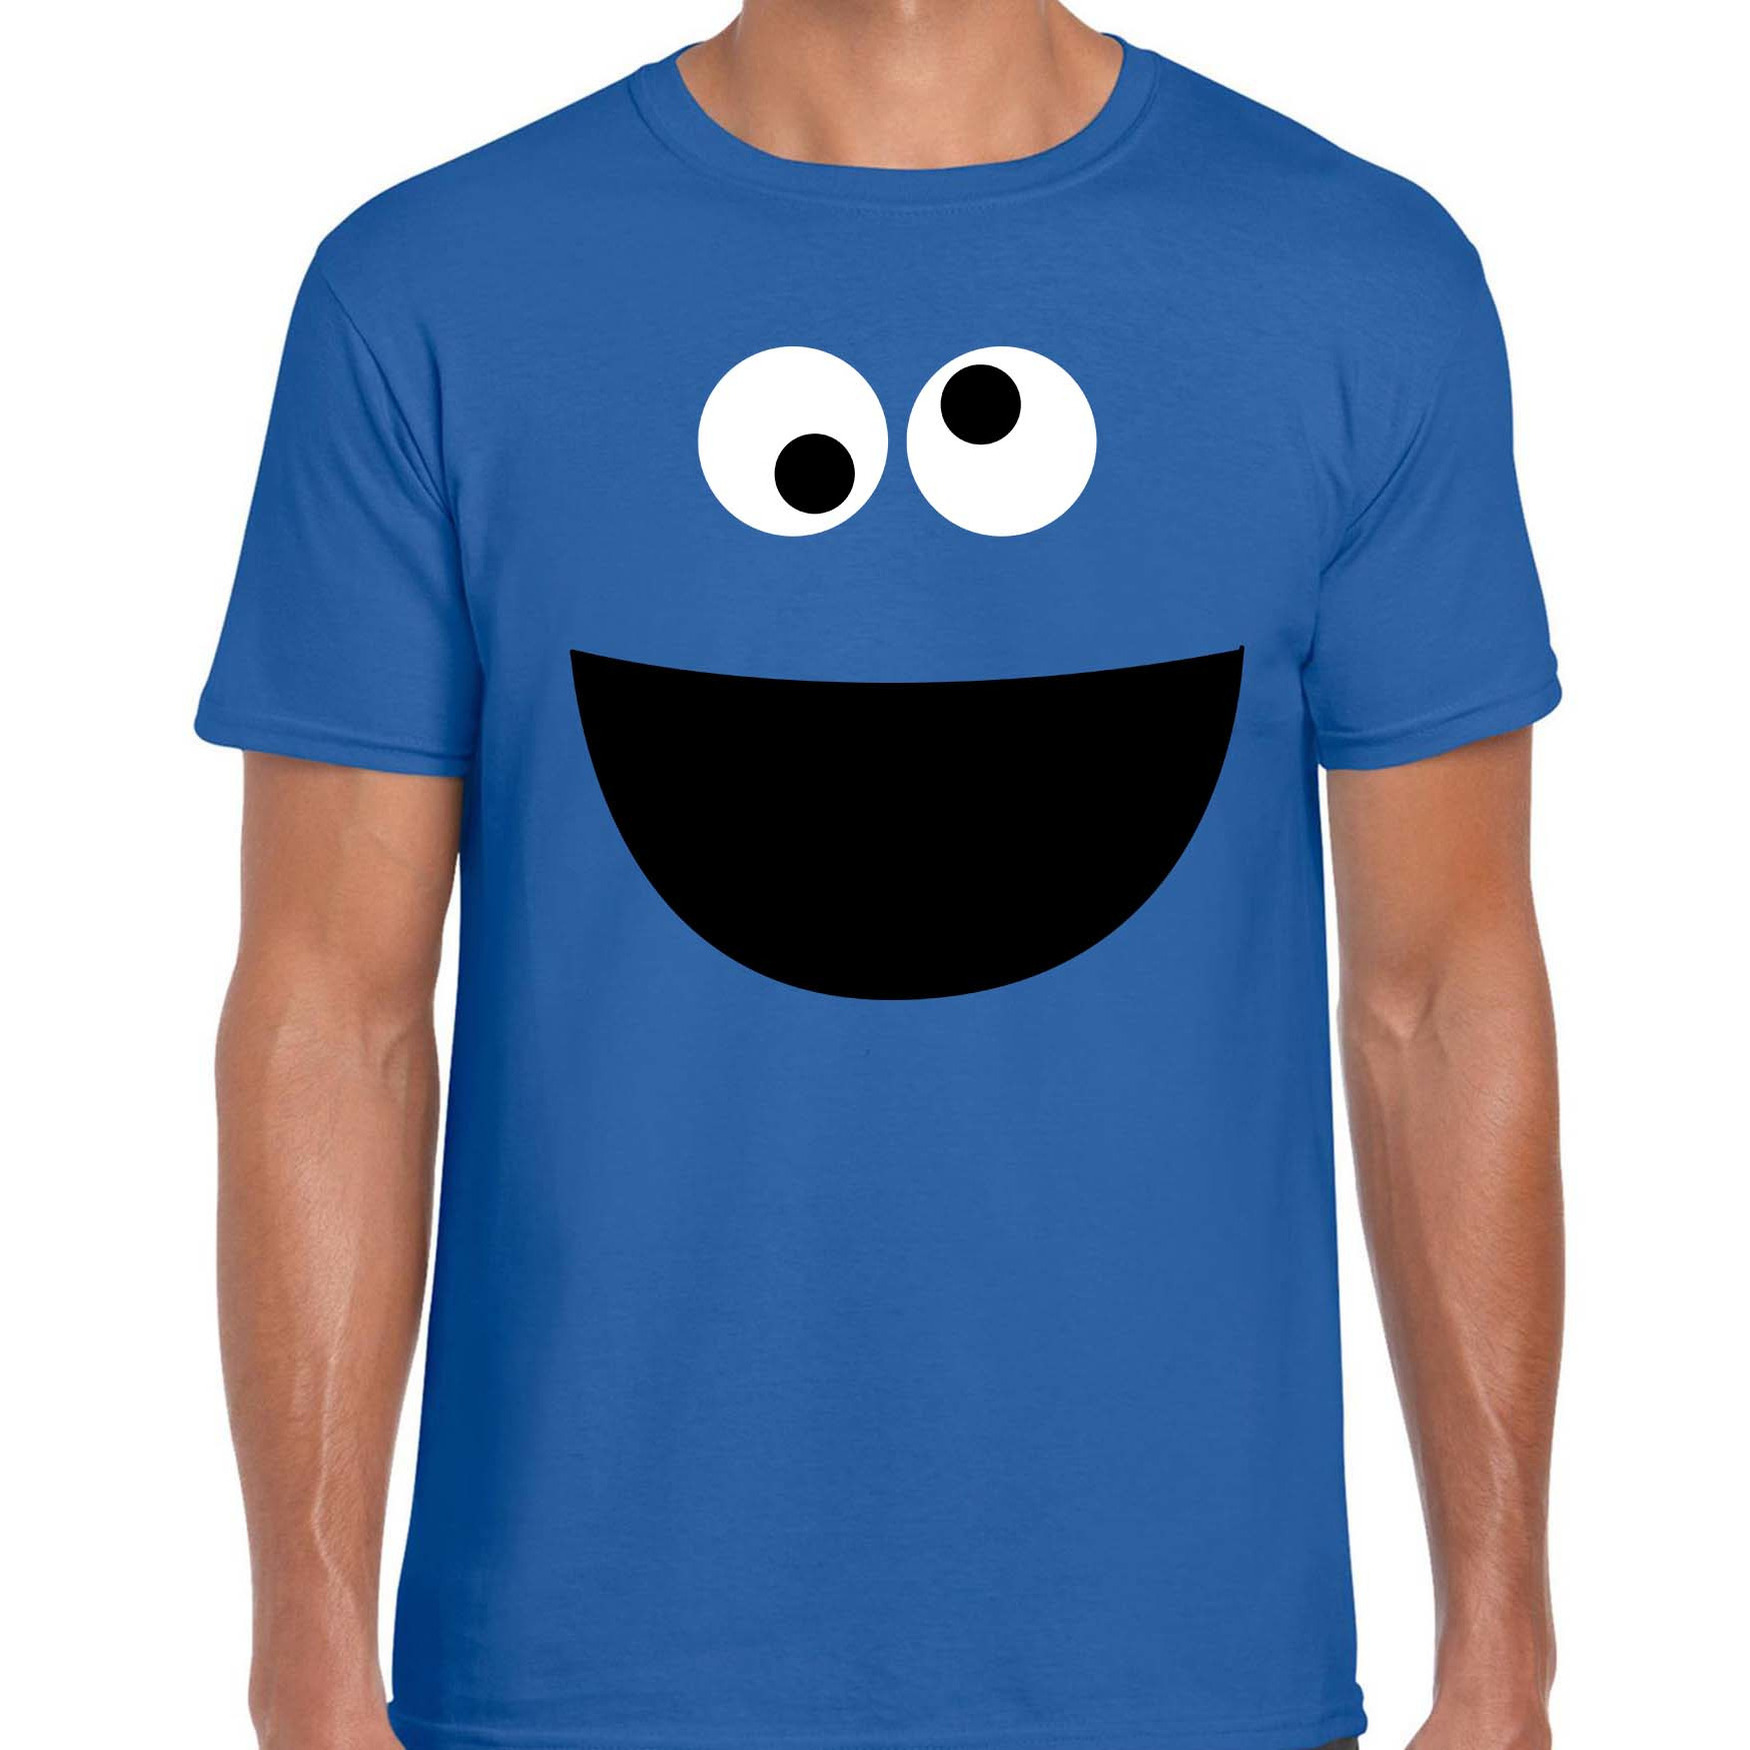 Verkleed-carnaval t-shirt blauw cartoon knuffel monster voor heren Verkleed-kostuum shirts